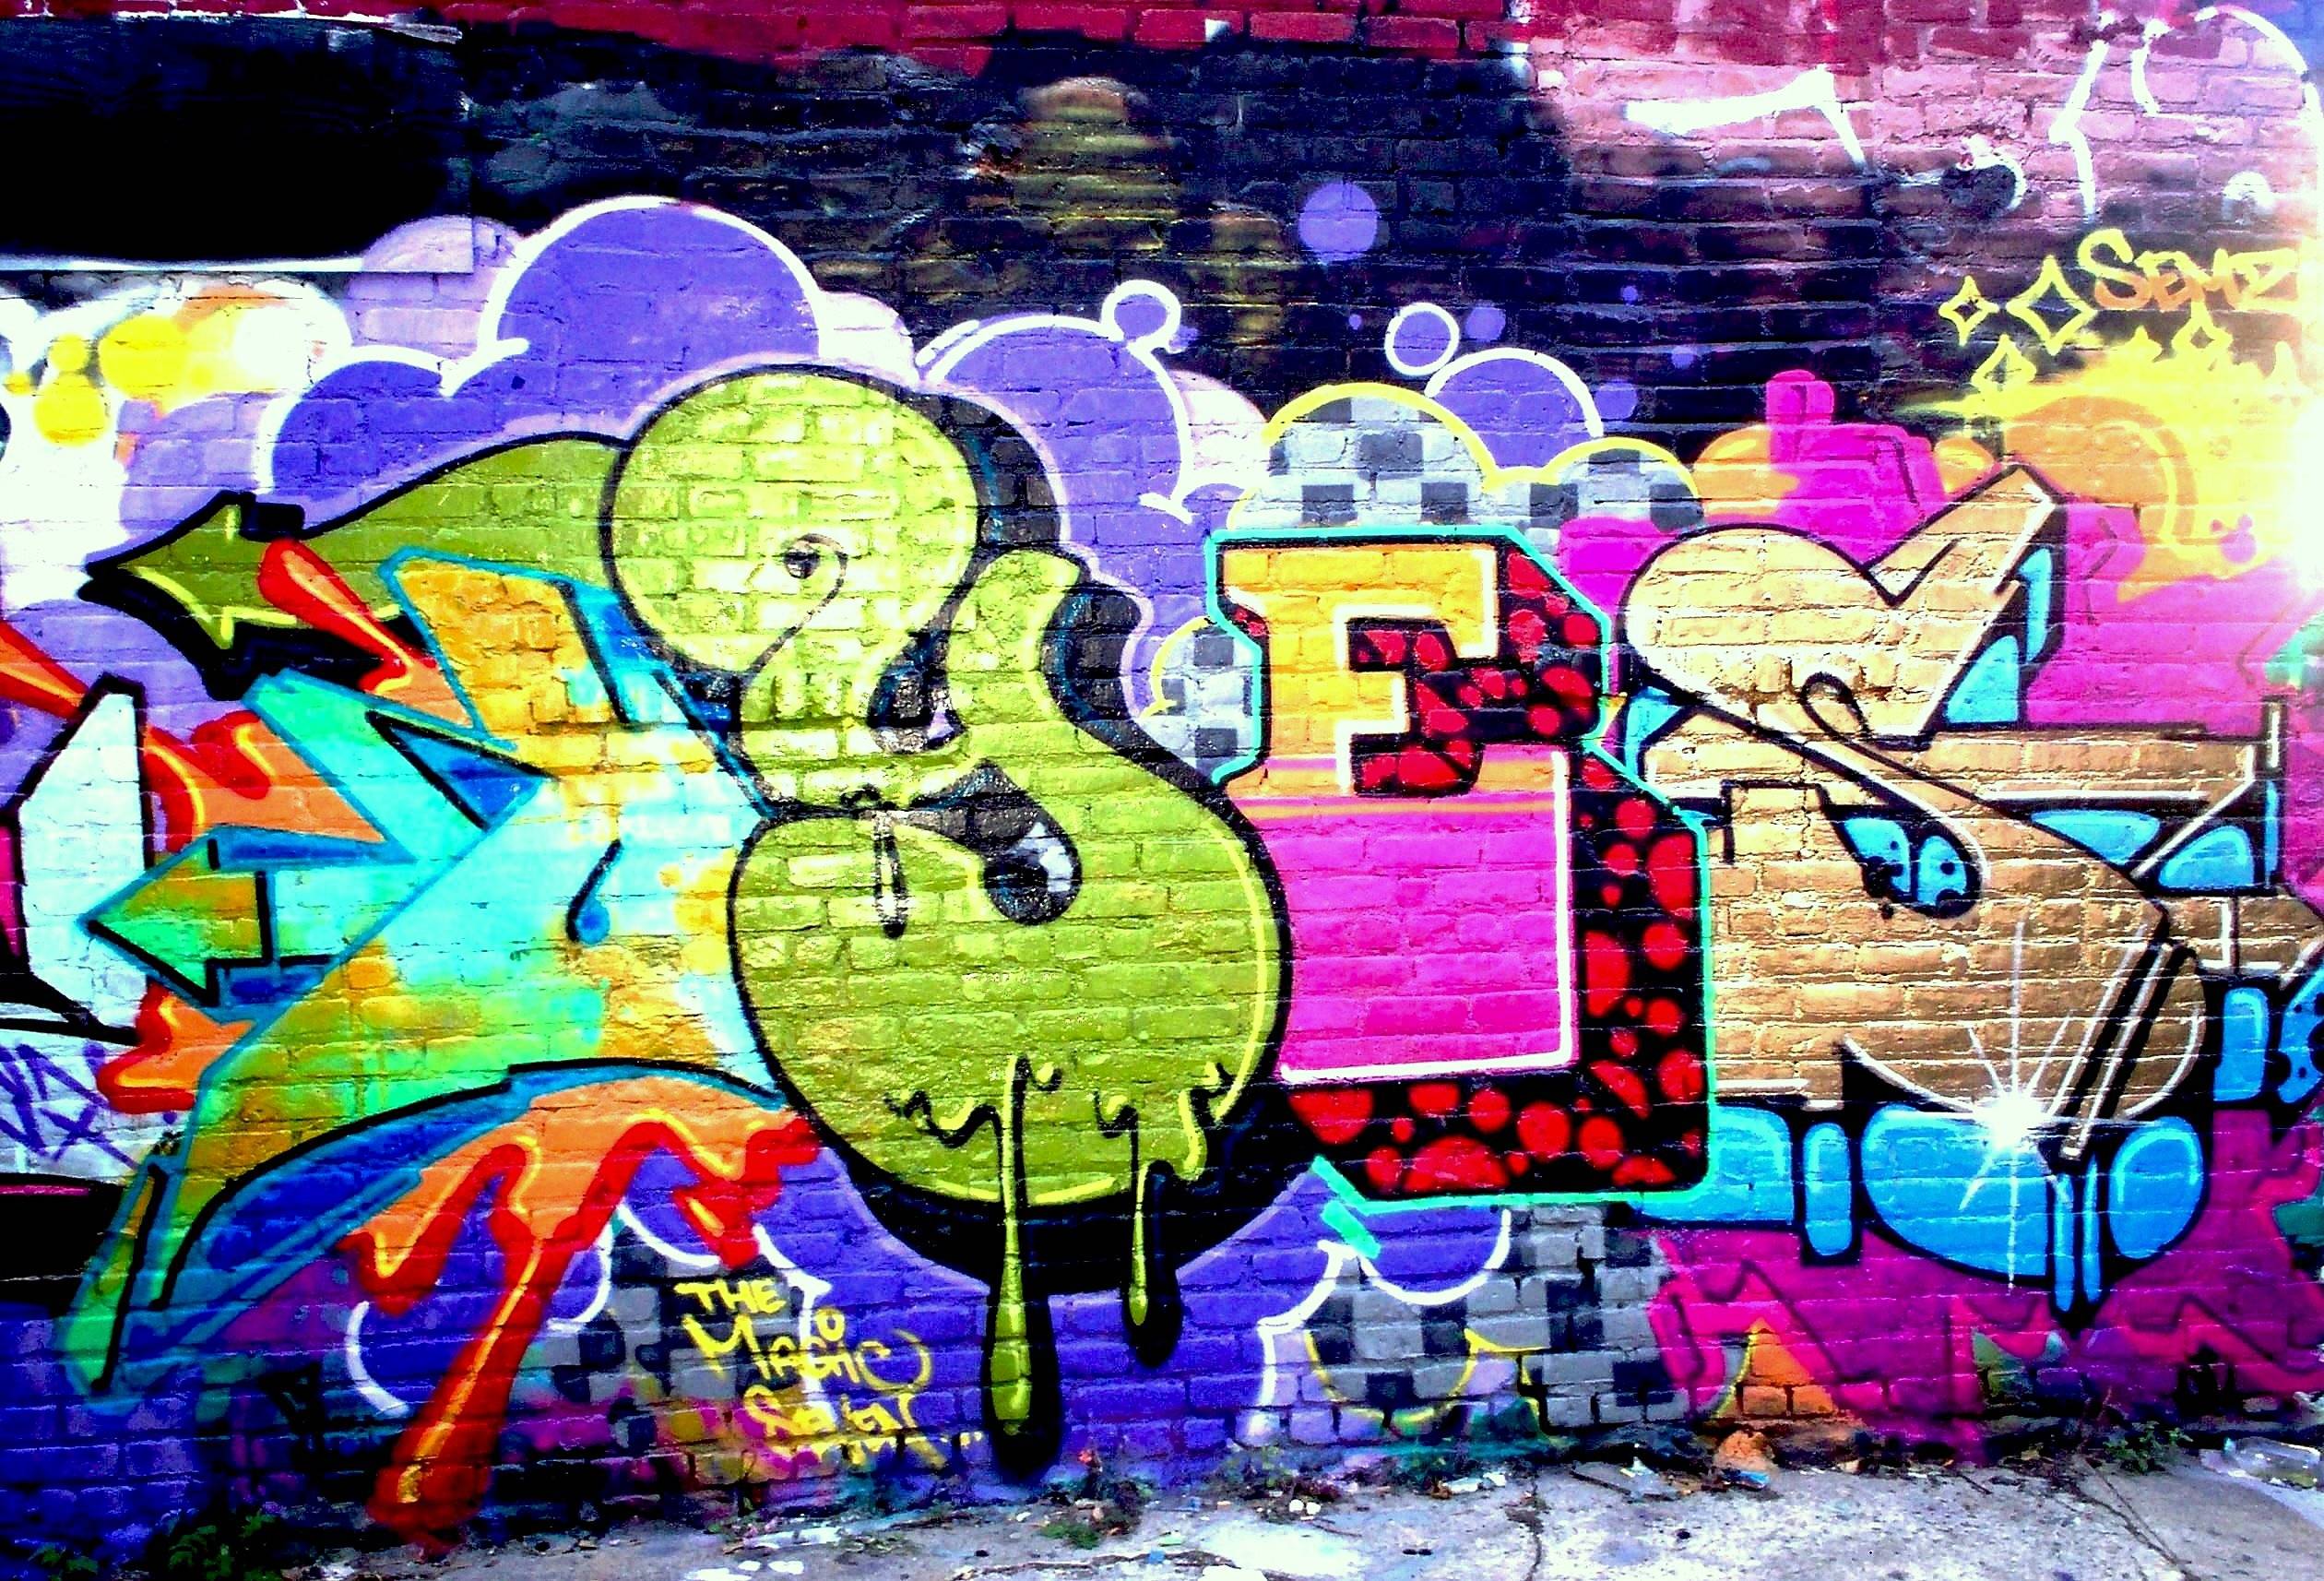 Other : Amazing Graffiti Amazing Graffiti In Wall Hd Wallpapers Hd